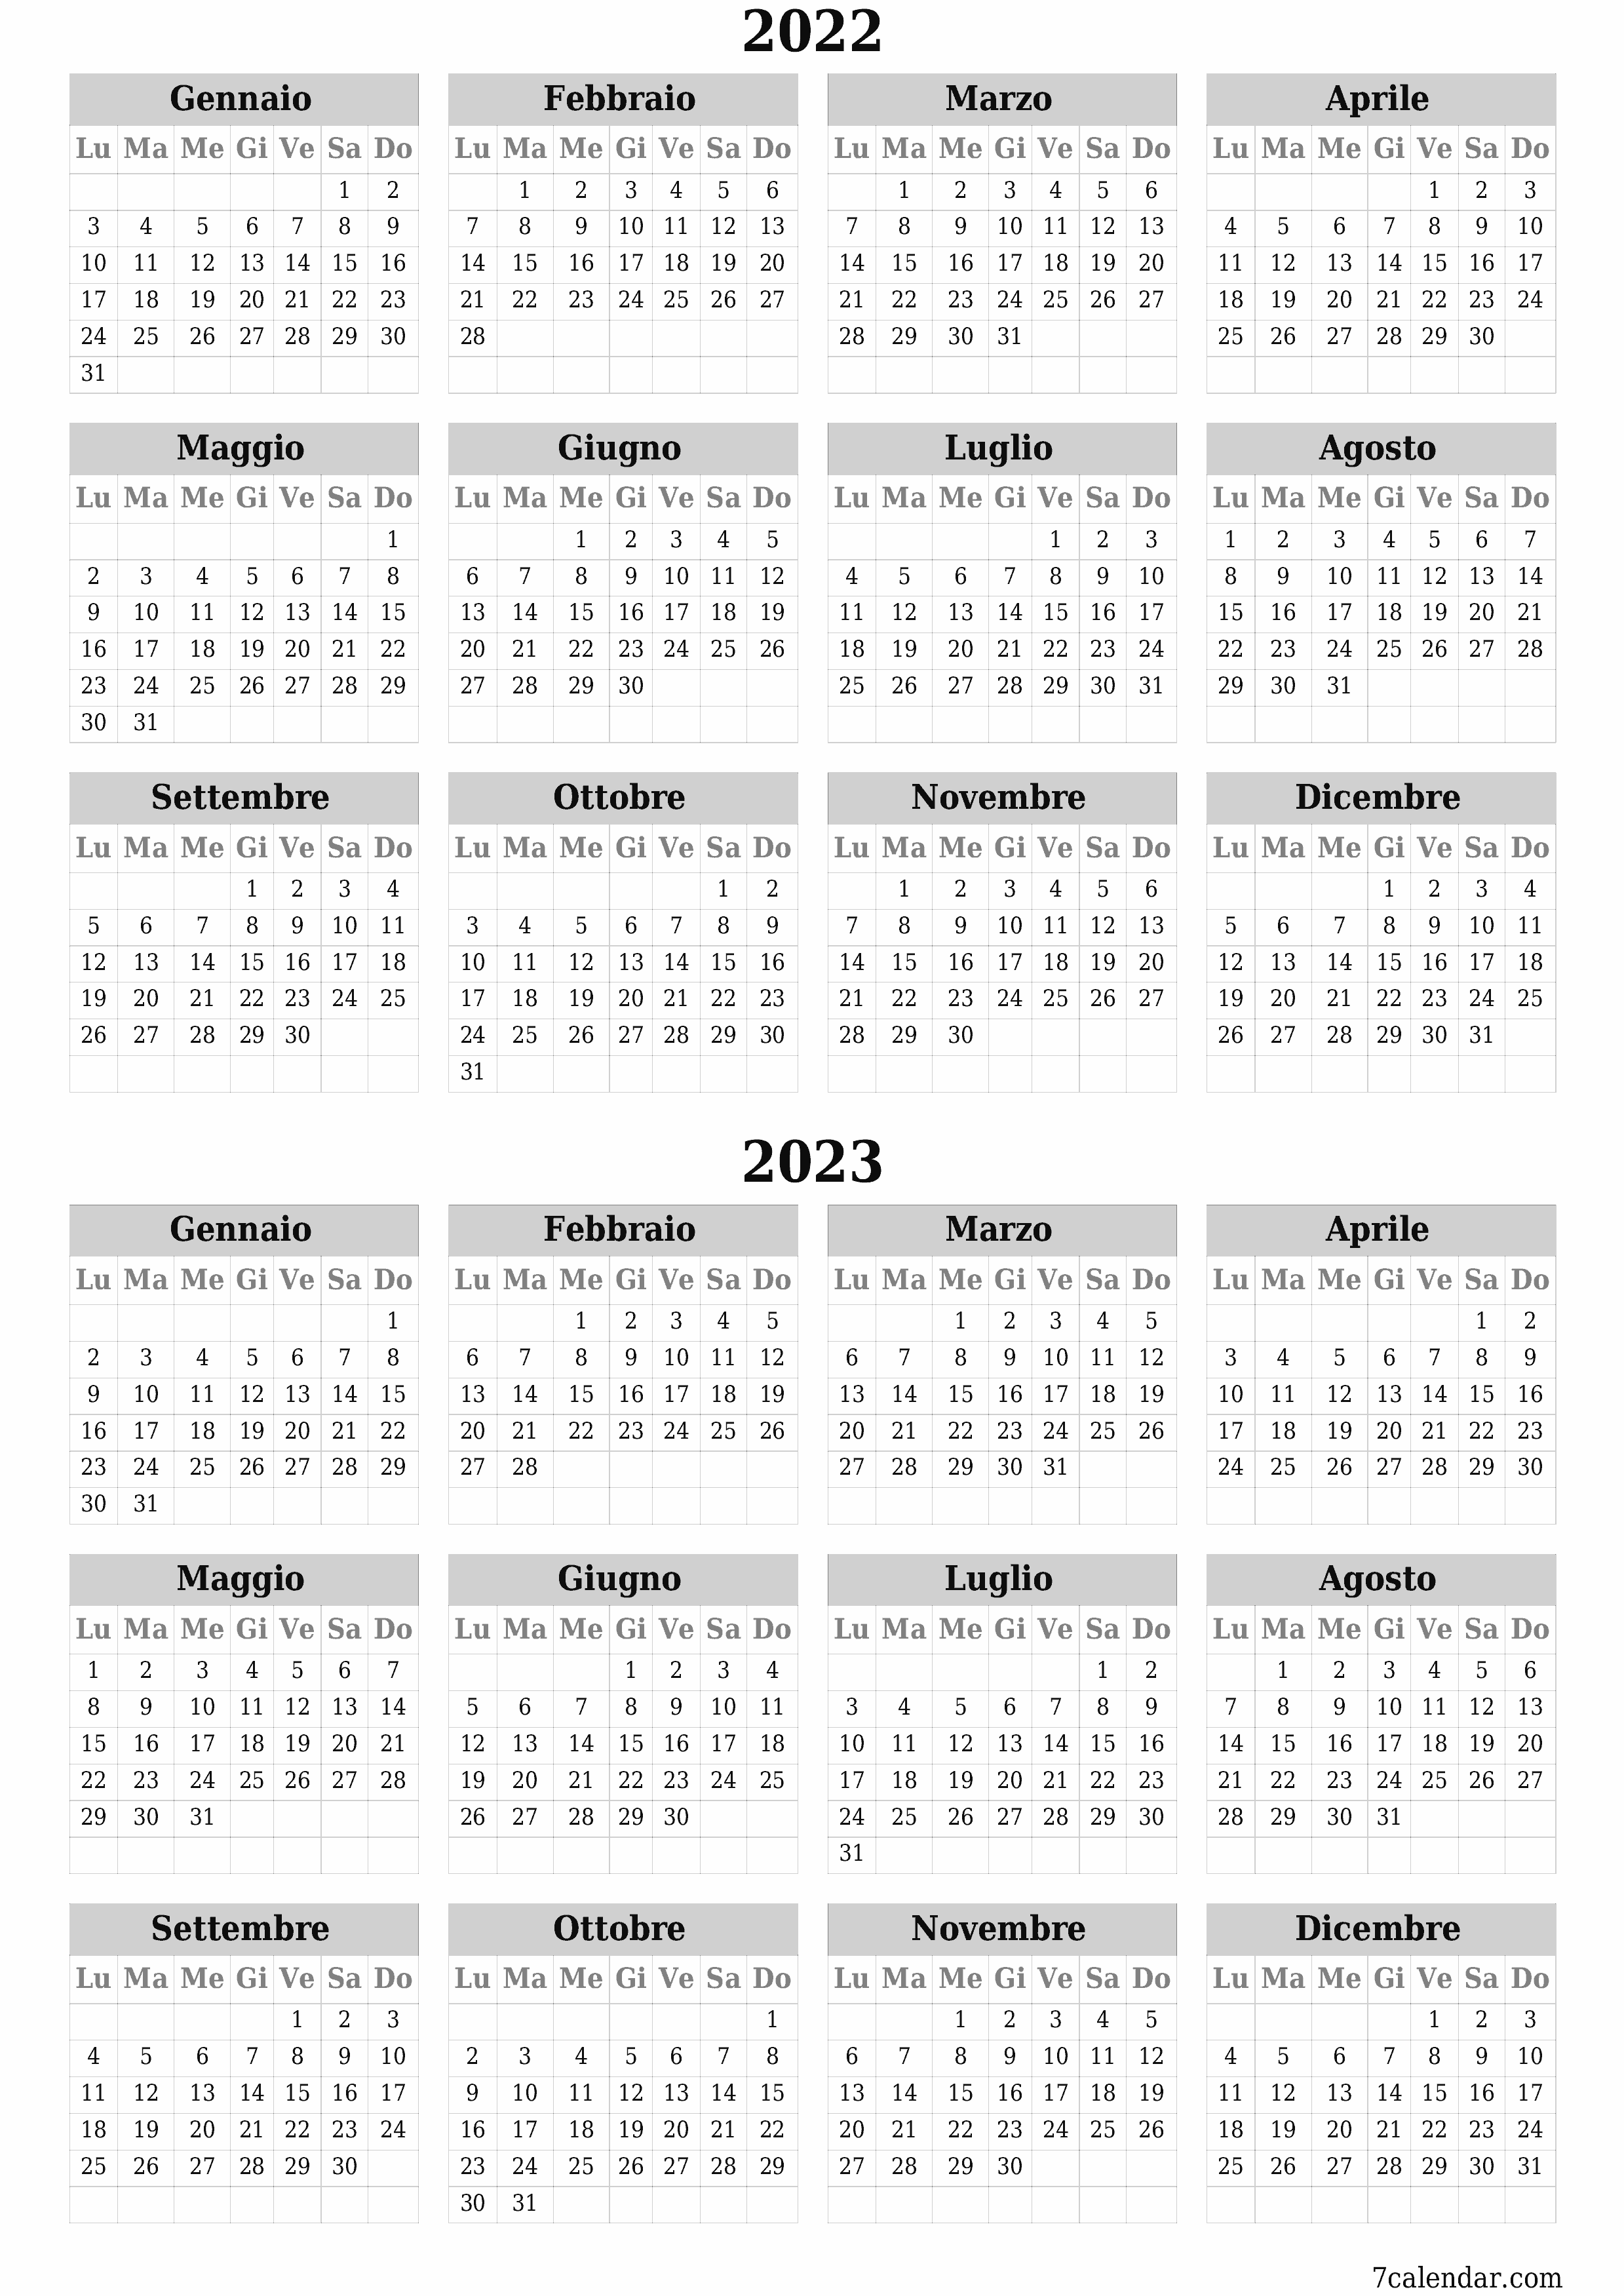  stampabile da parete modello di gratuitoverticale Annuale calendario Settembre (Set) 2022